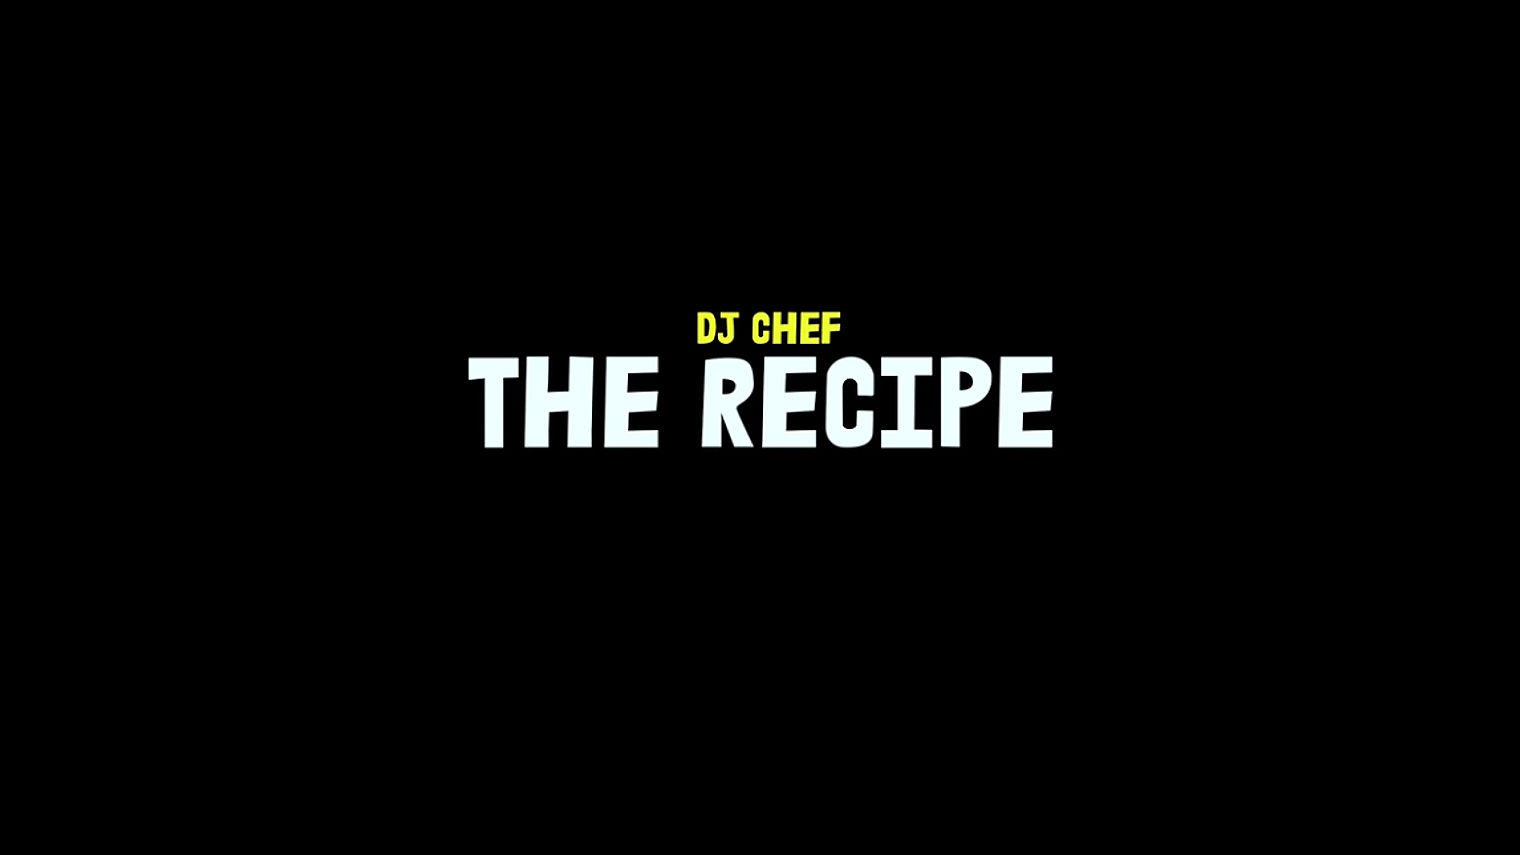 THE RECIPE - DJ CHEF